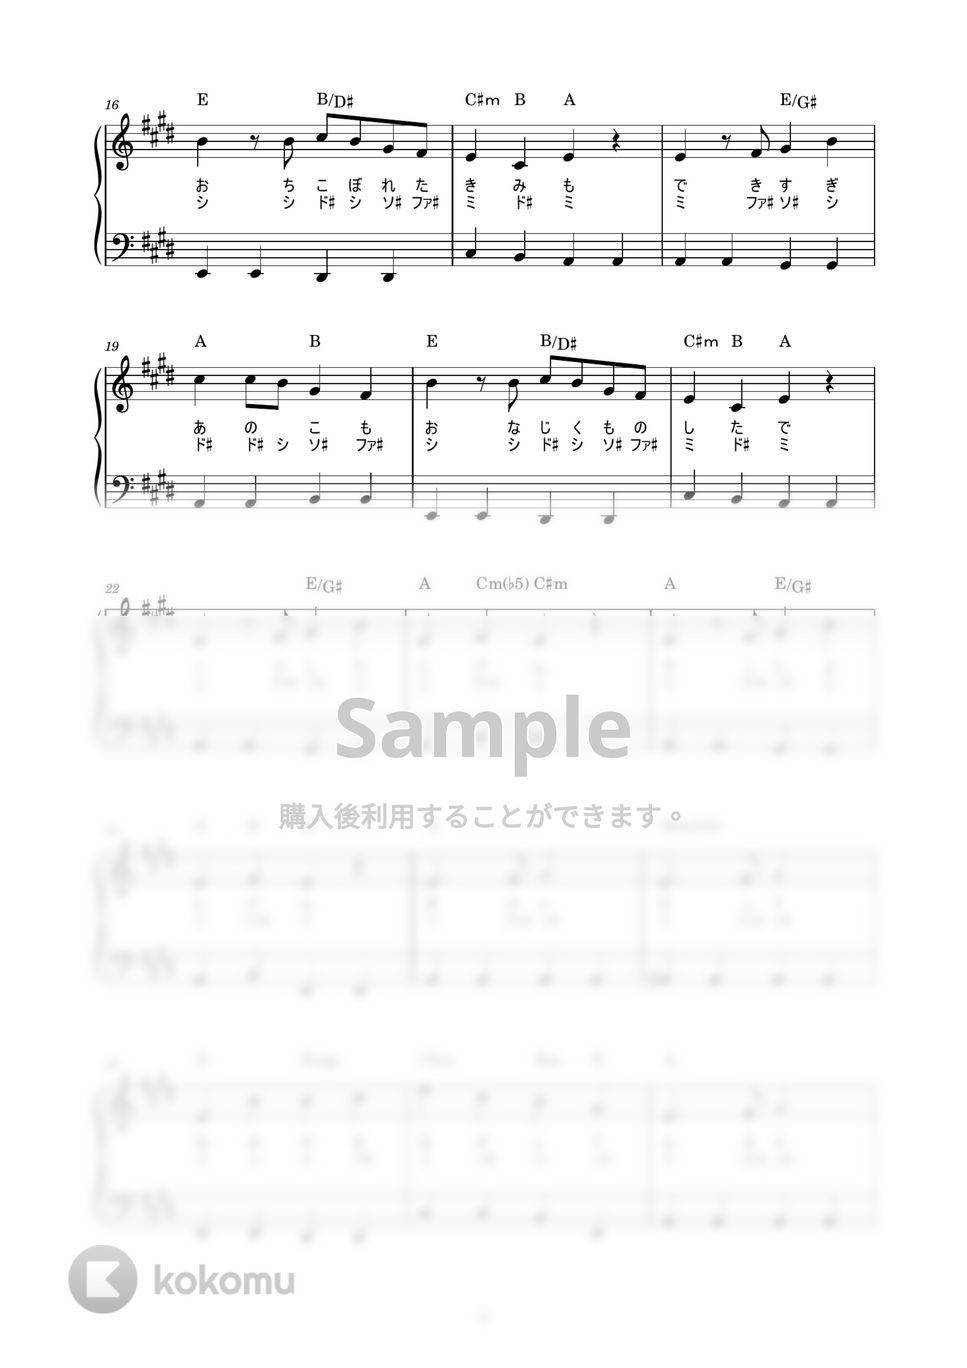 星野源 - ドラえもん (かんたん / 歌詞付き / ドレミ付き / 初心者) by piano.tokyo